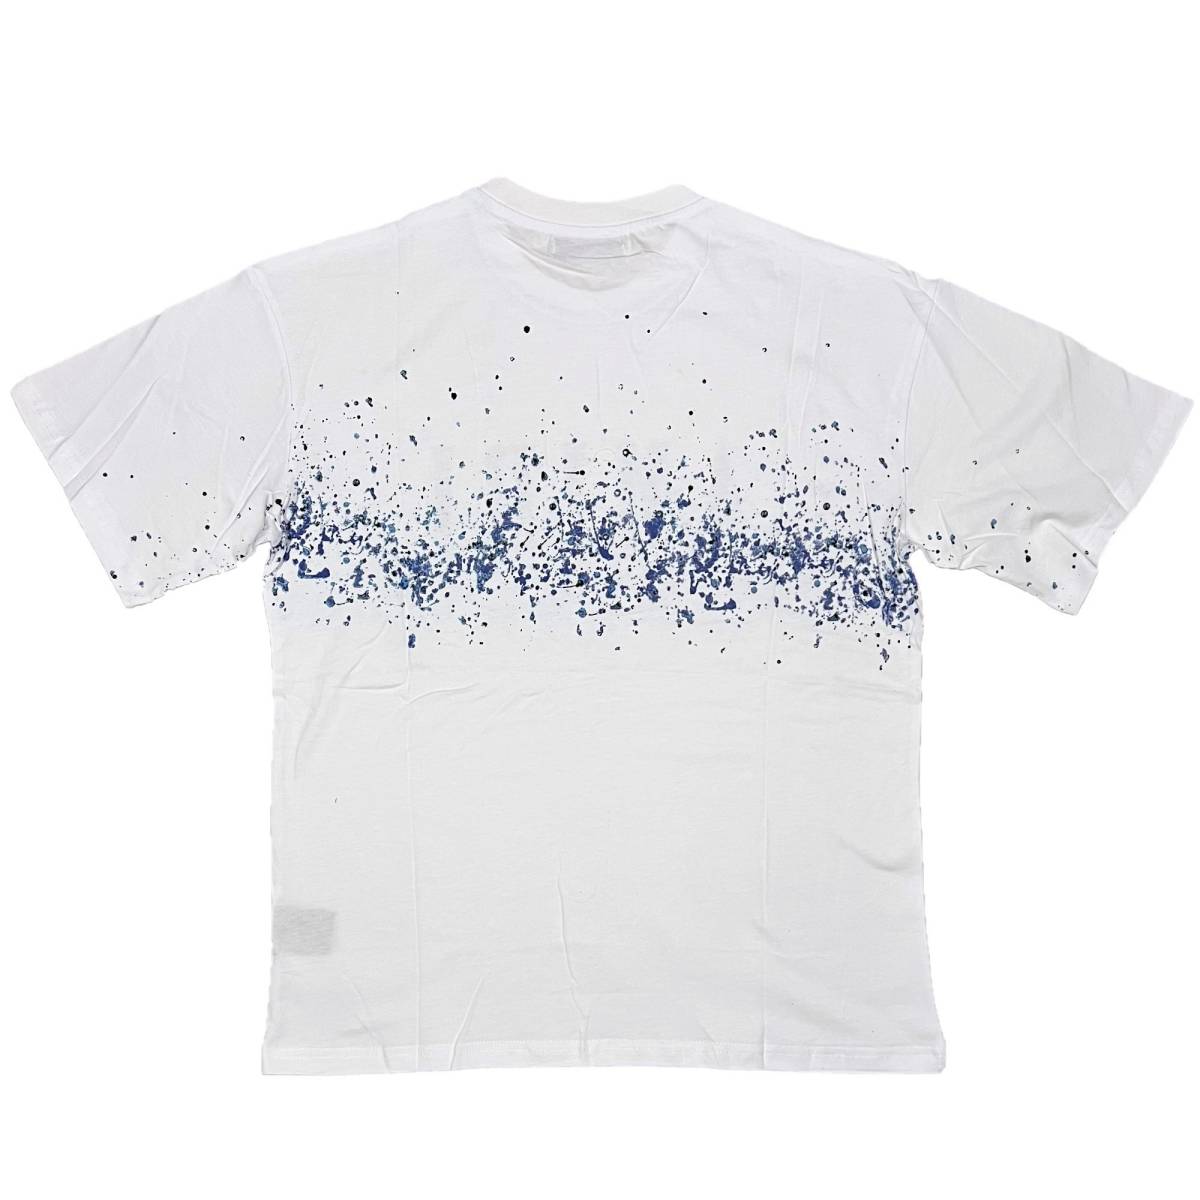 [並行輸入品] AMIRI アミリ BLUE PAINT BLEACH S/S T shirt ブルーペイント ブリーチ 半袖 Tシャツ (ホワイト) (XL)_画像2